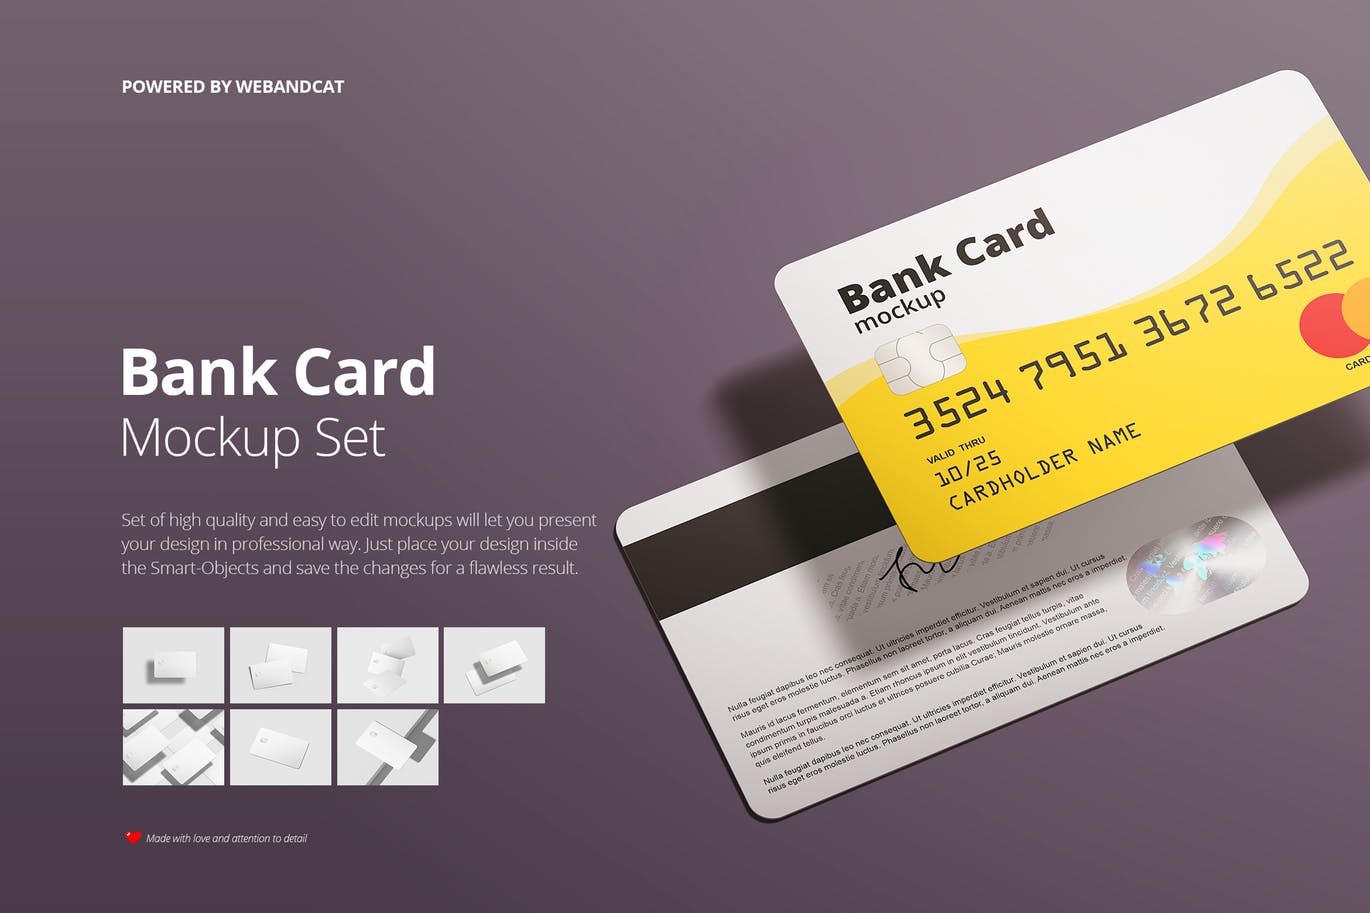 银行卡/会员卡版面设计效果图非凡图库精选模板 Bank / Membership Card Mockup插图